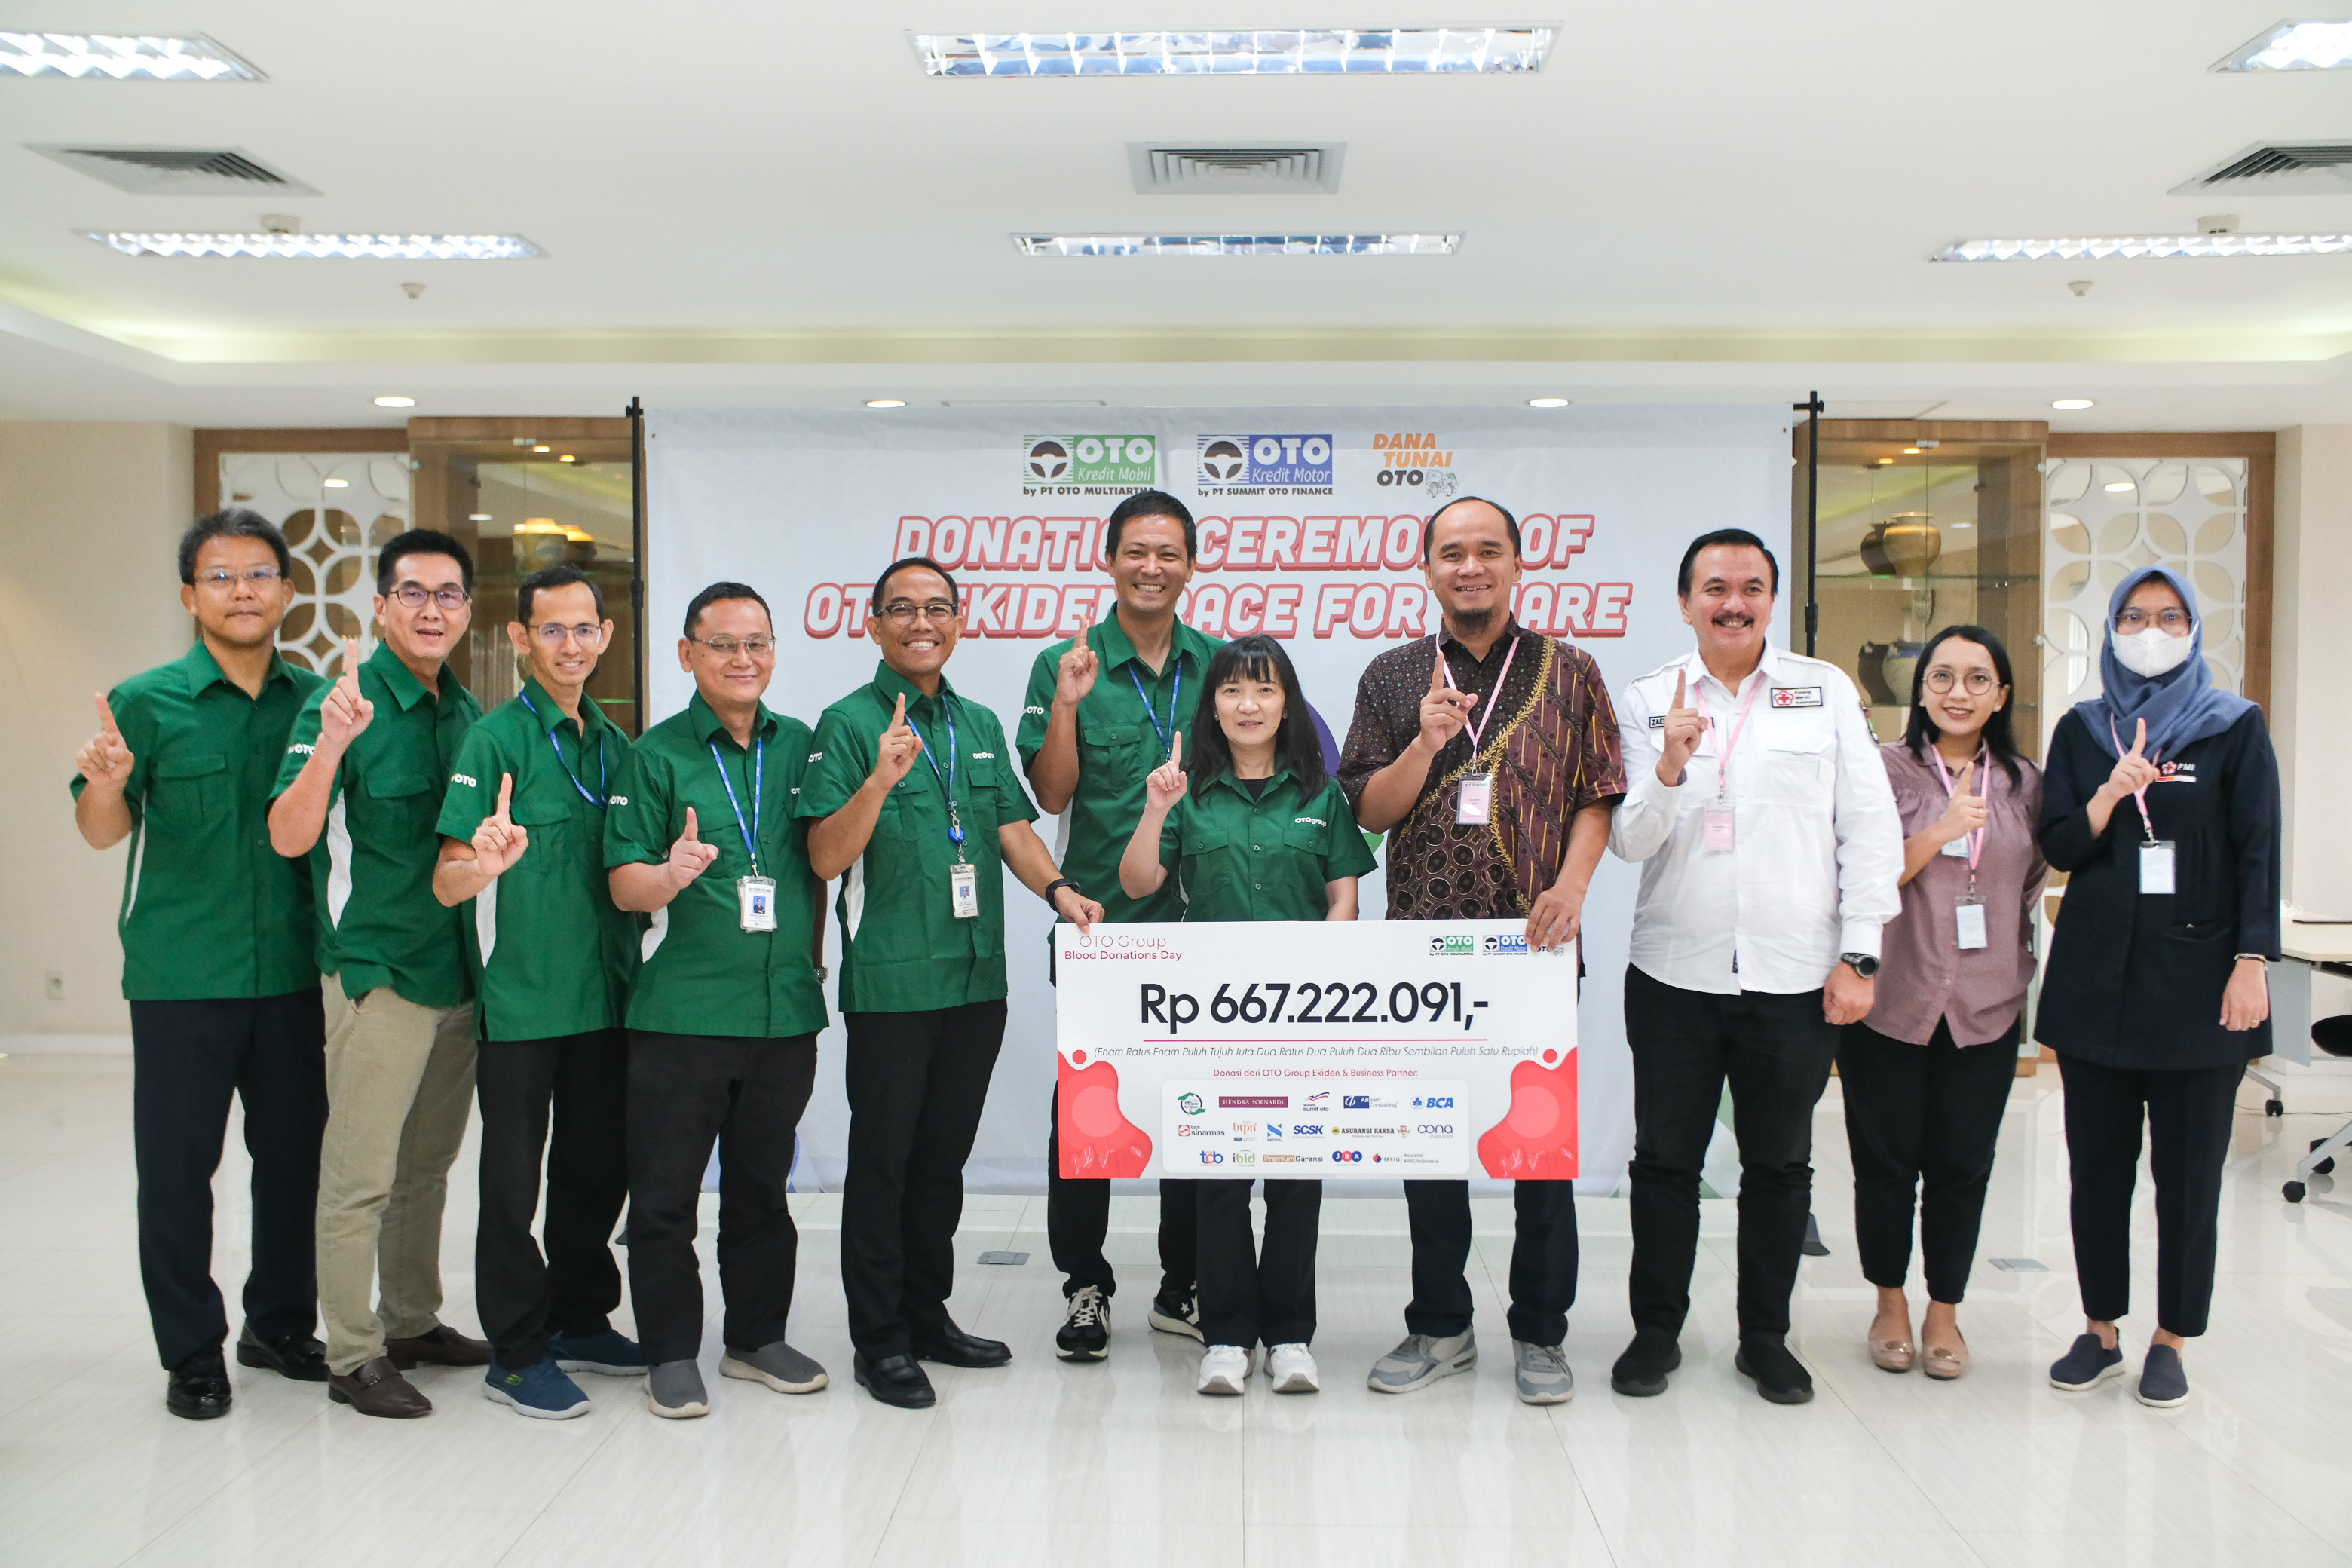 OTO Group Serahkan Donasi Kemanusiaan Senilai Rp 667.222.091 Untuk Palang Merah Indonesia